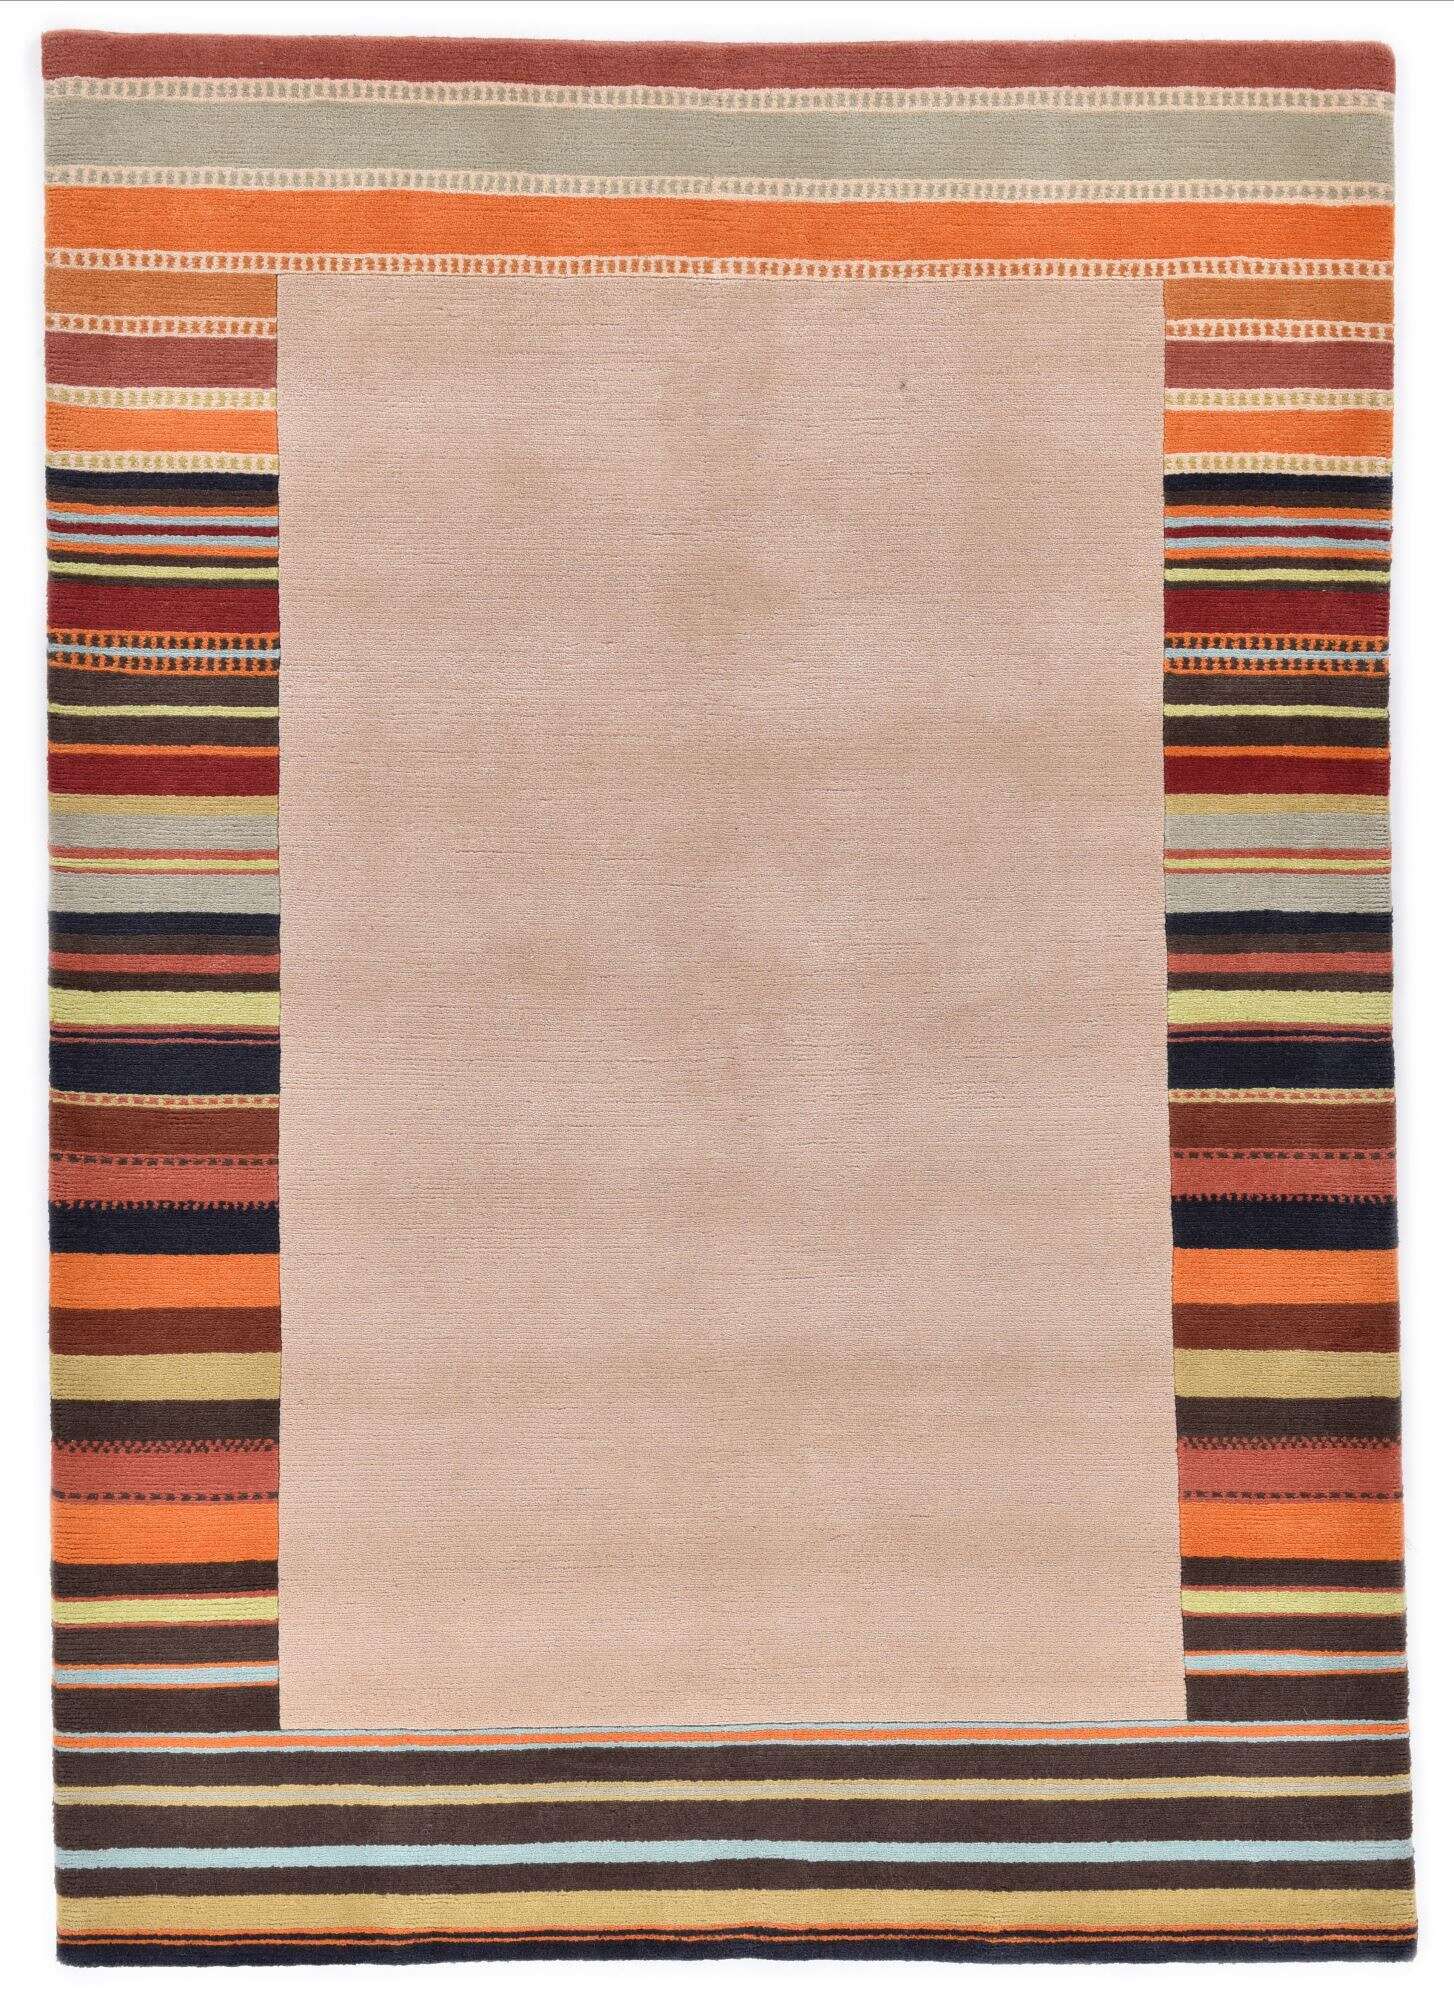 Tibetanischer Teppich Gurkha 160x230 cm